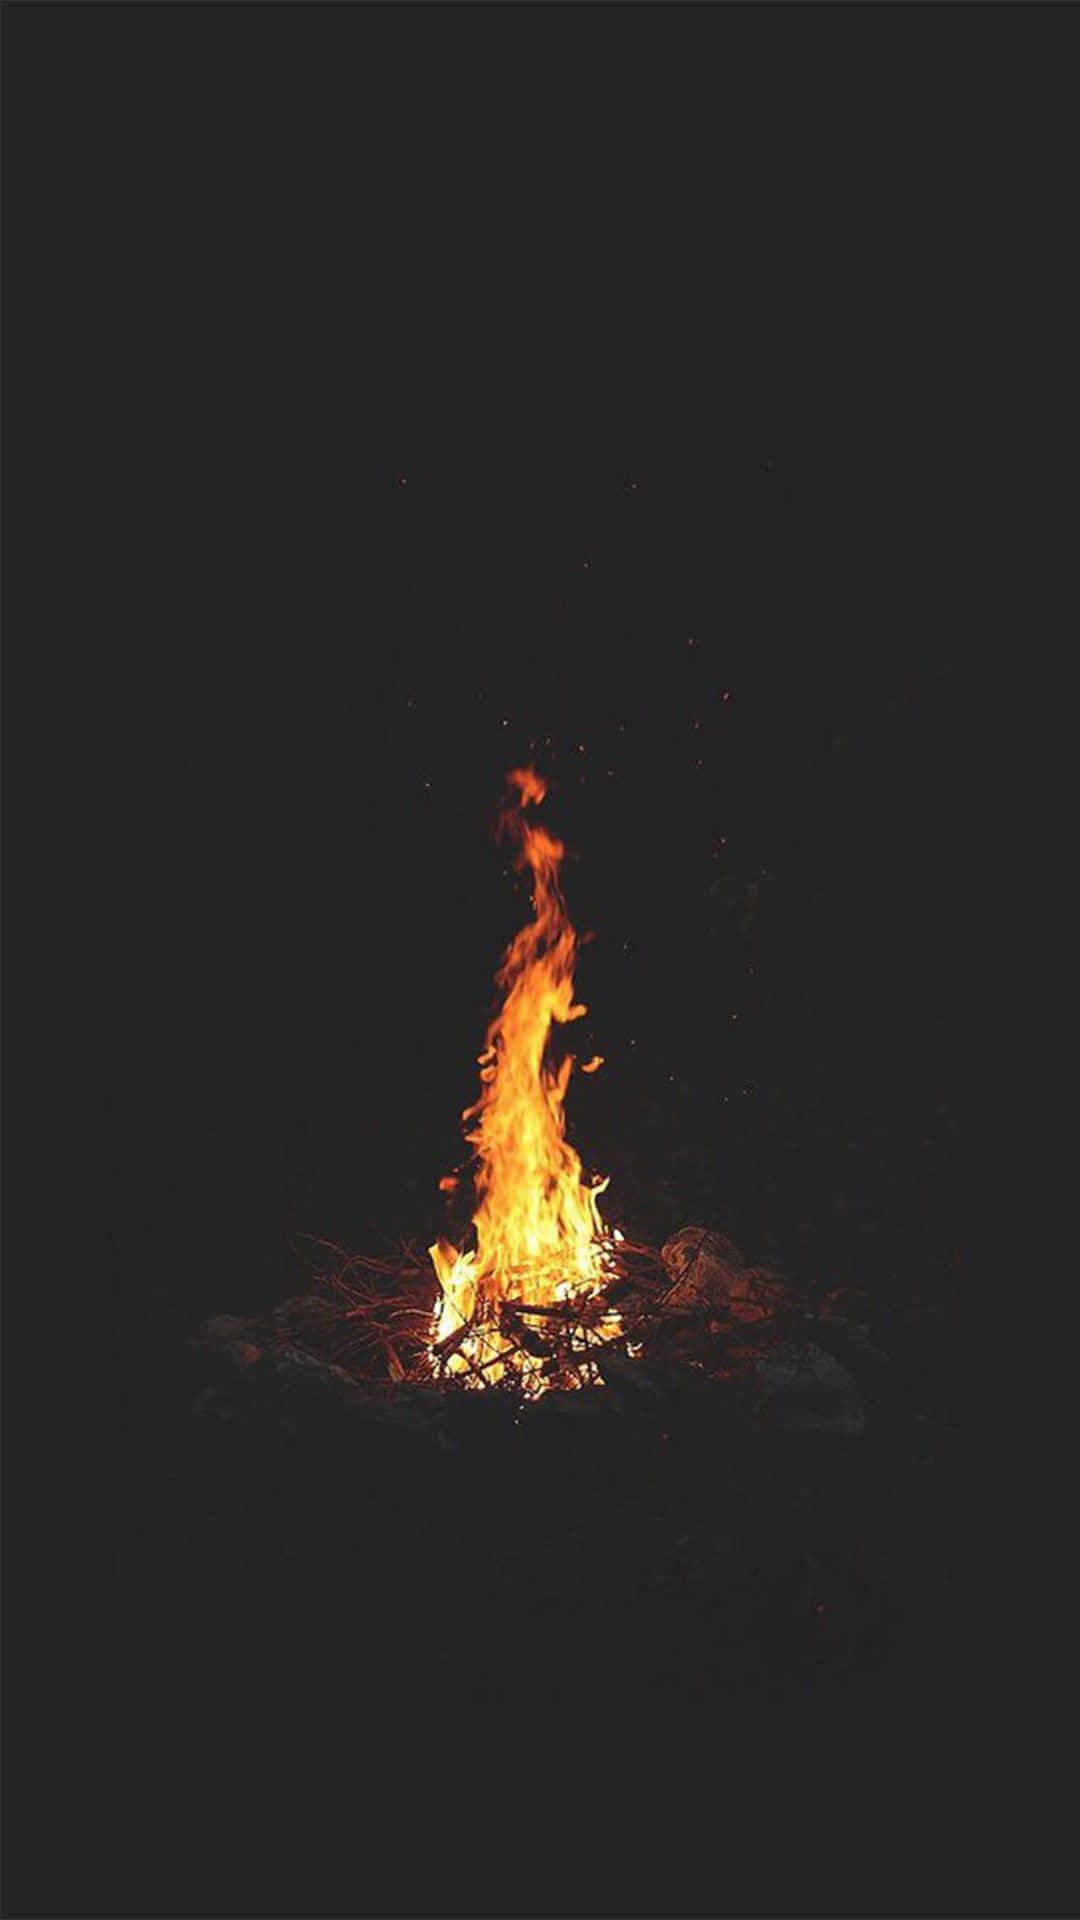 Blazing Campfire on a Dark Night Wallpaper